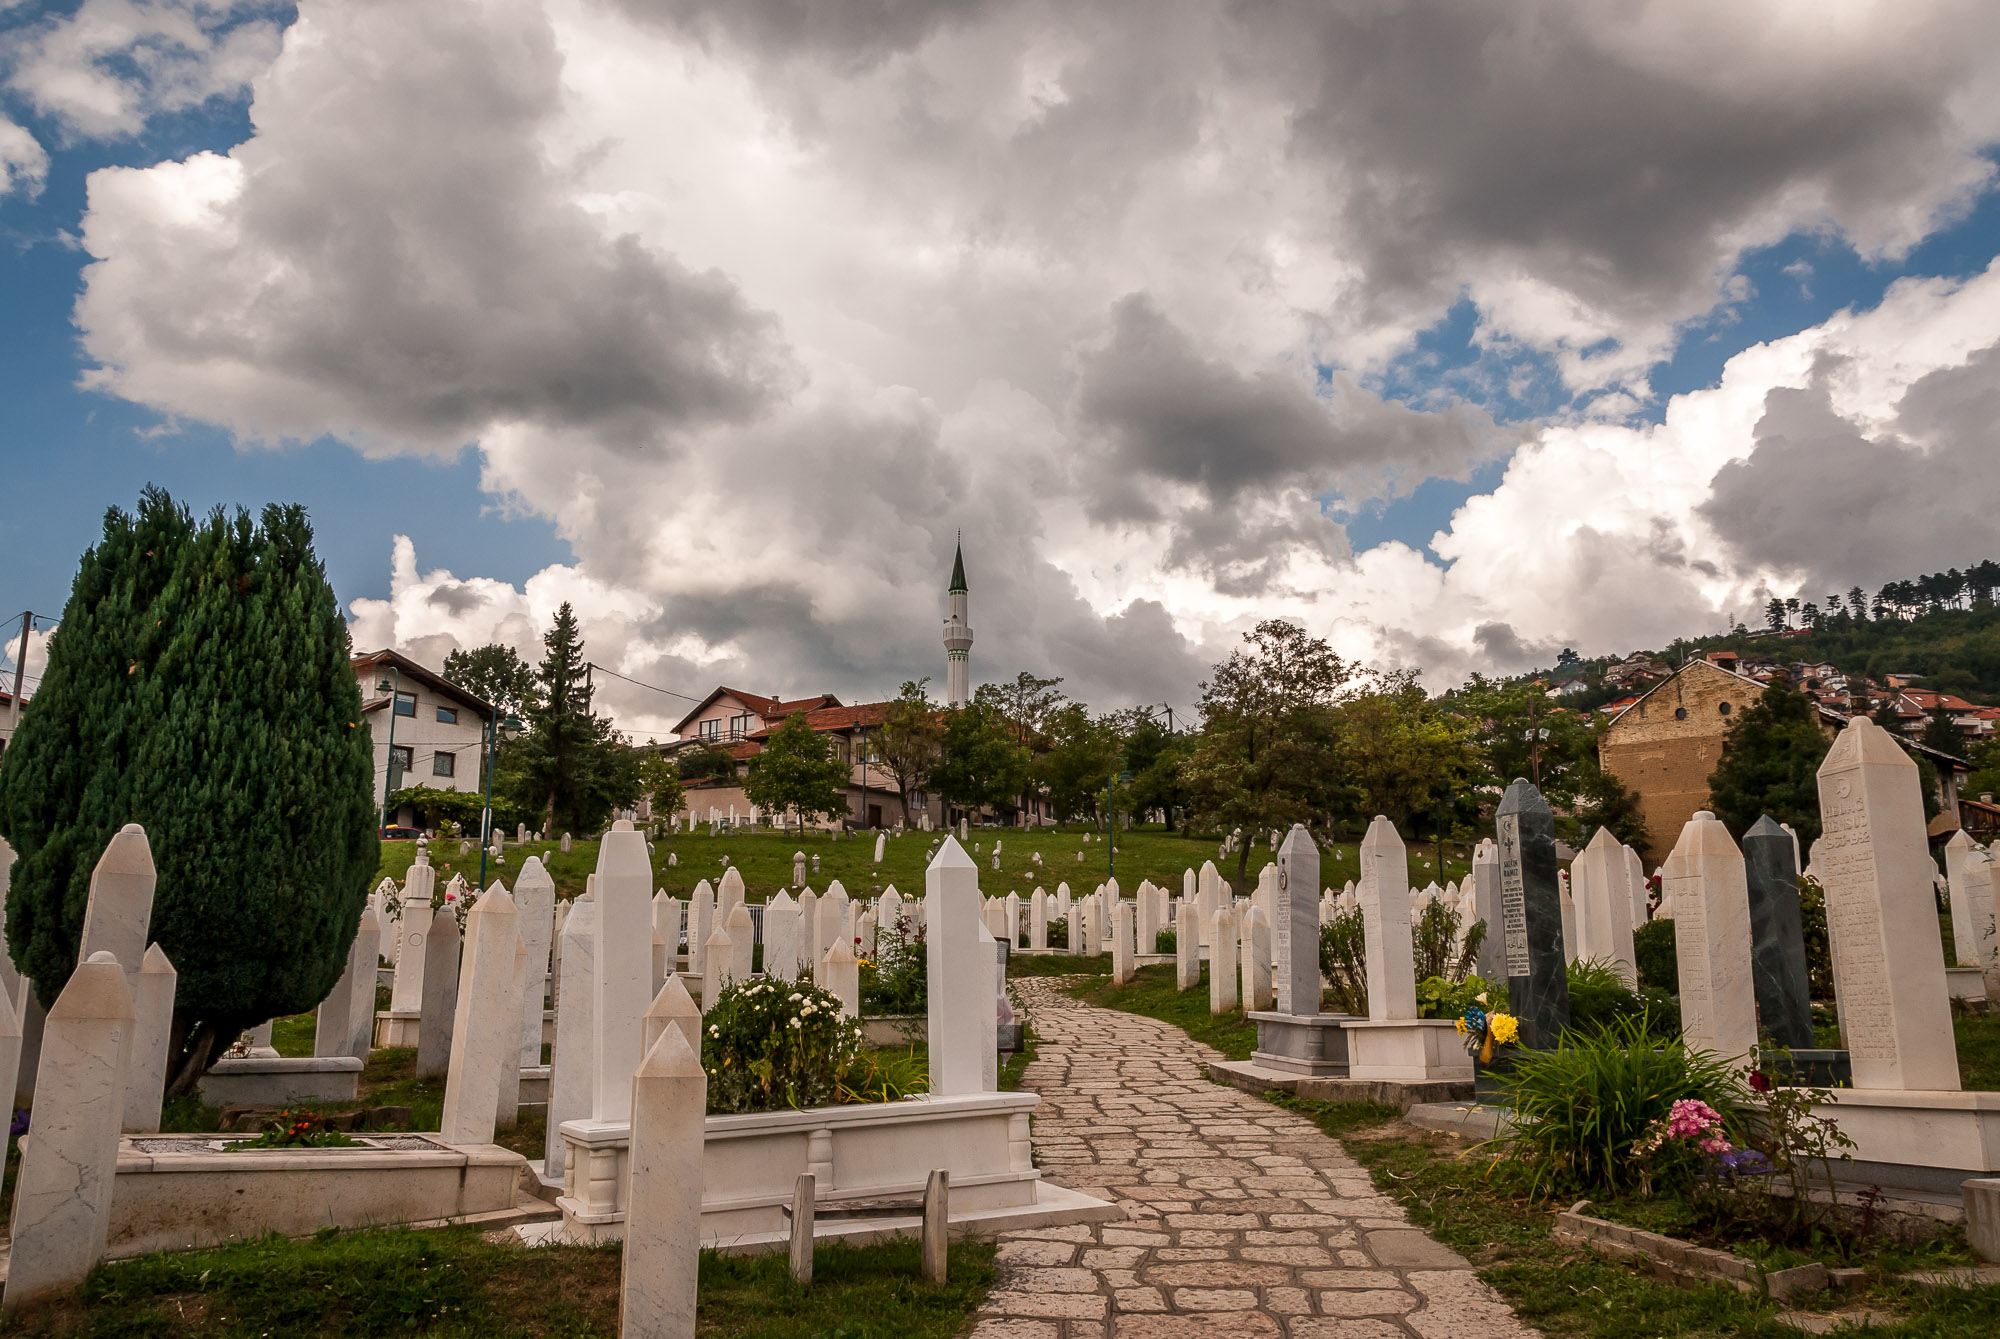 Sarajevo cemetery